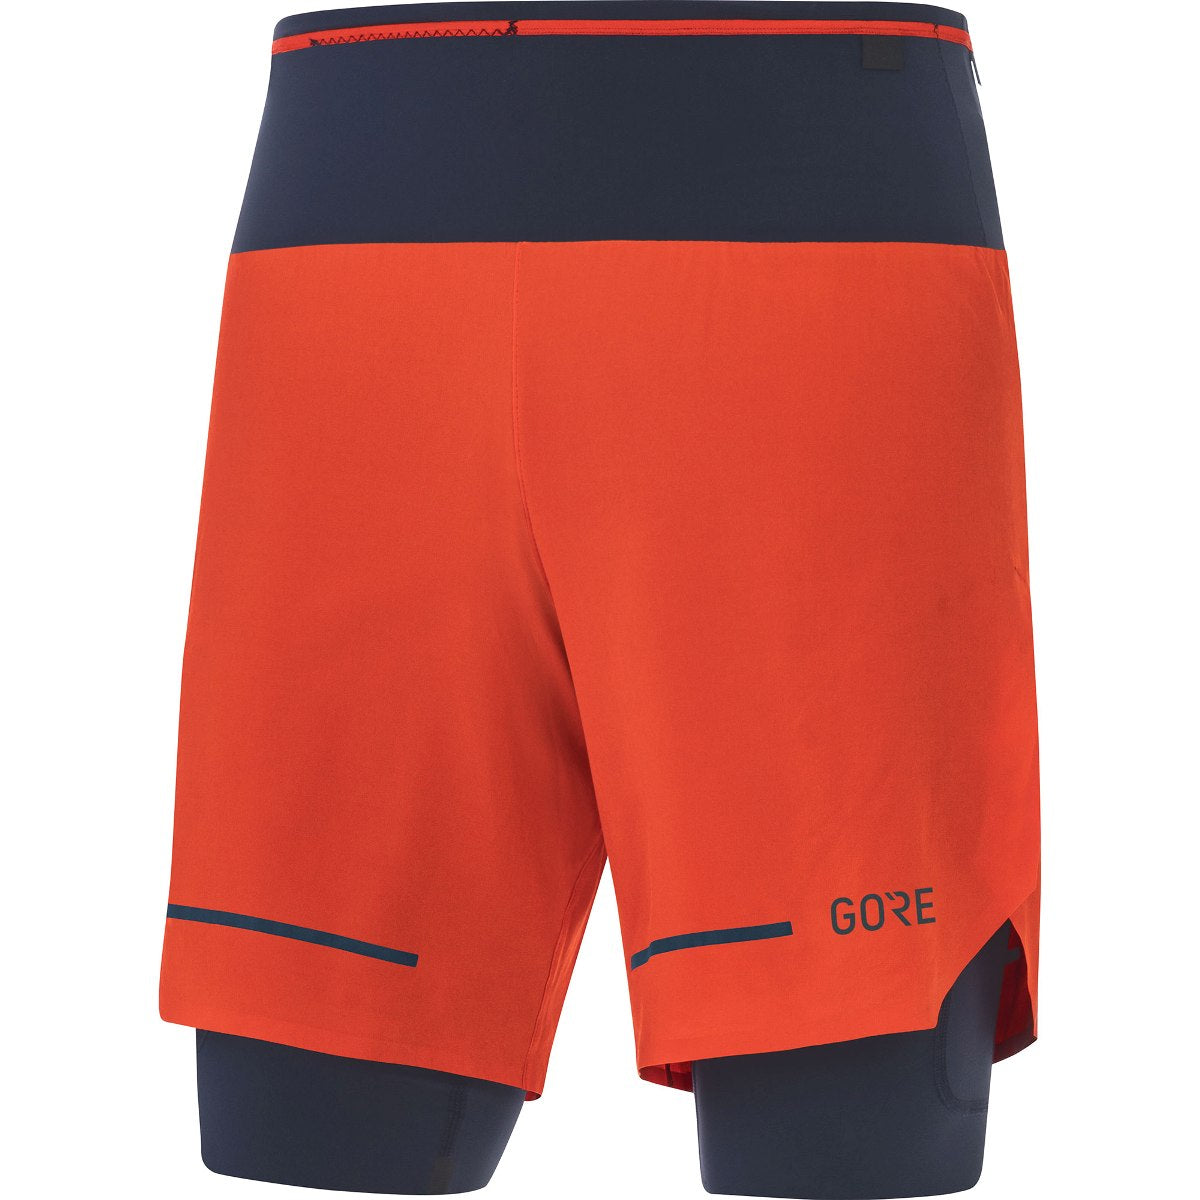 Gore Wear Ultimate 2 in 1 Shorts Fireball Orbit